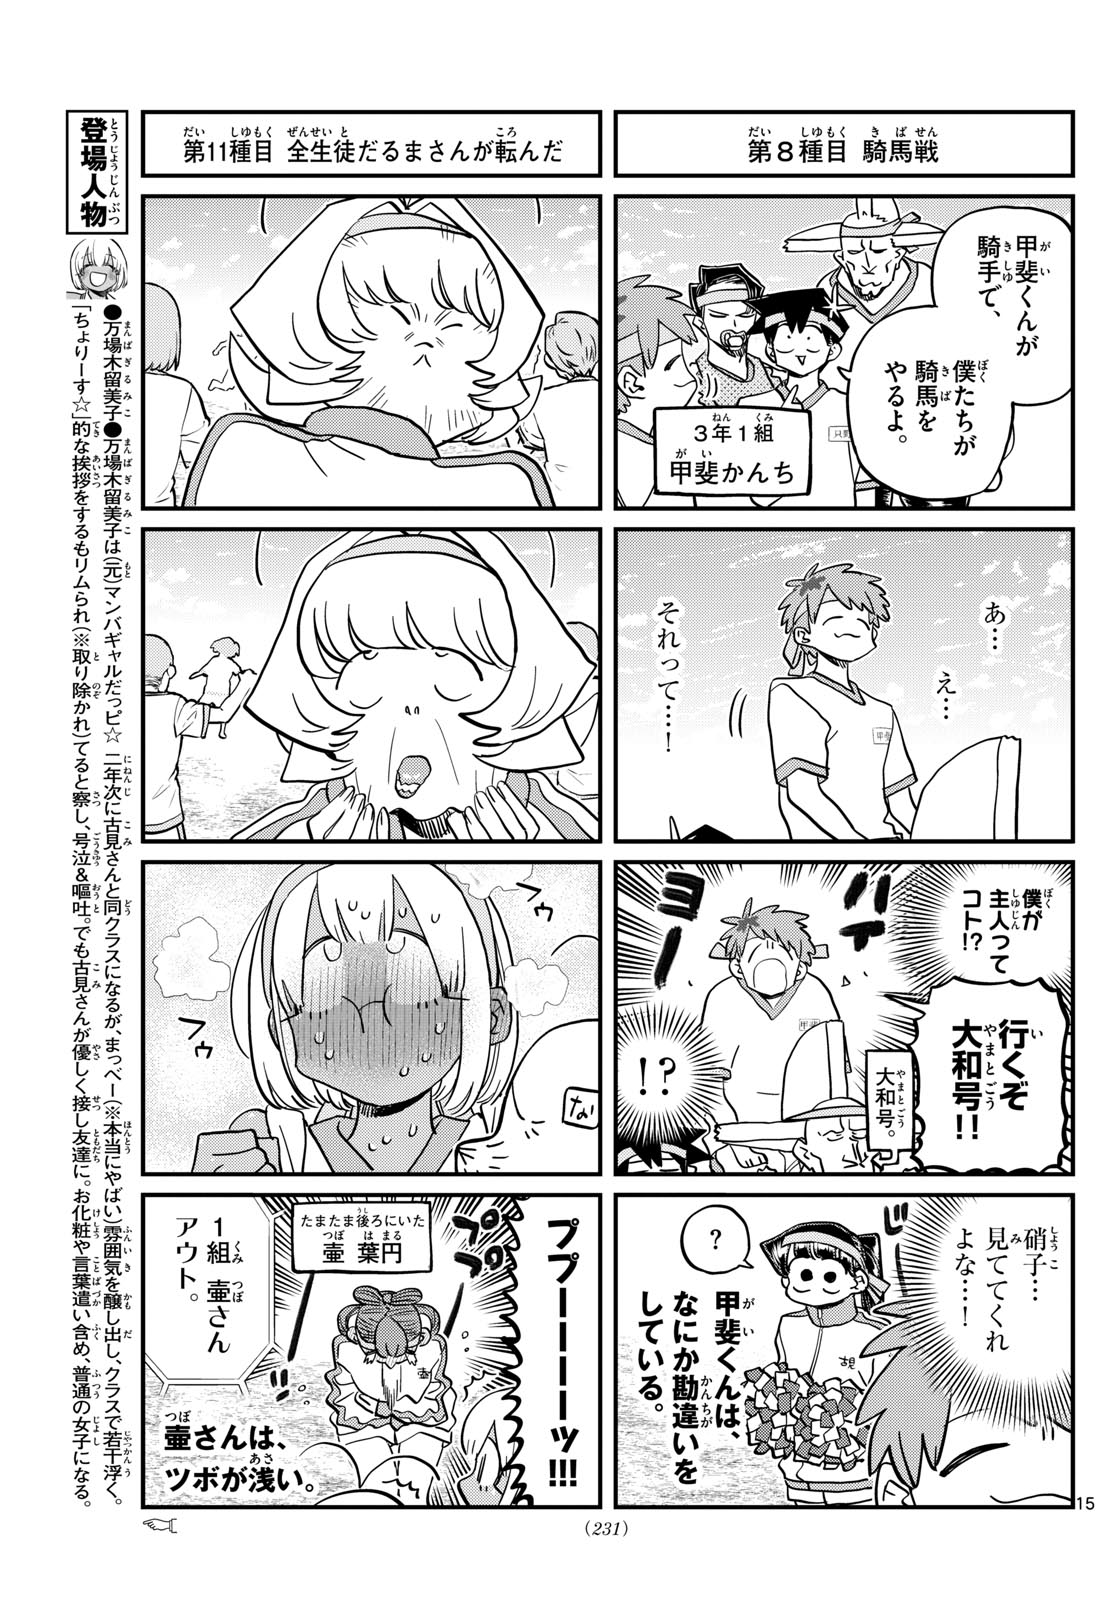 Komi-san Wa Komyushou Desu Manga 430 Español - Manga Online